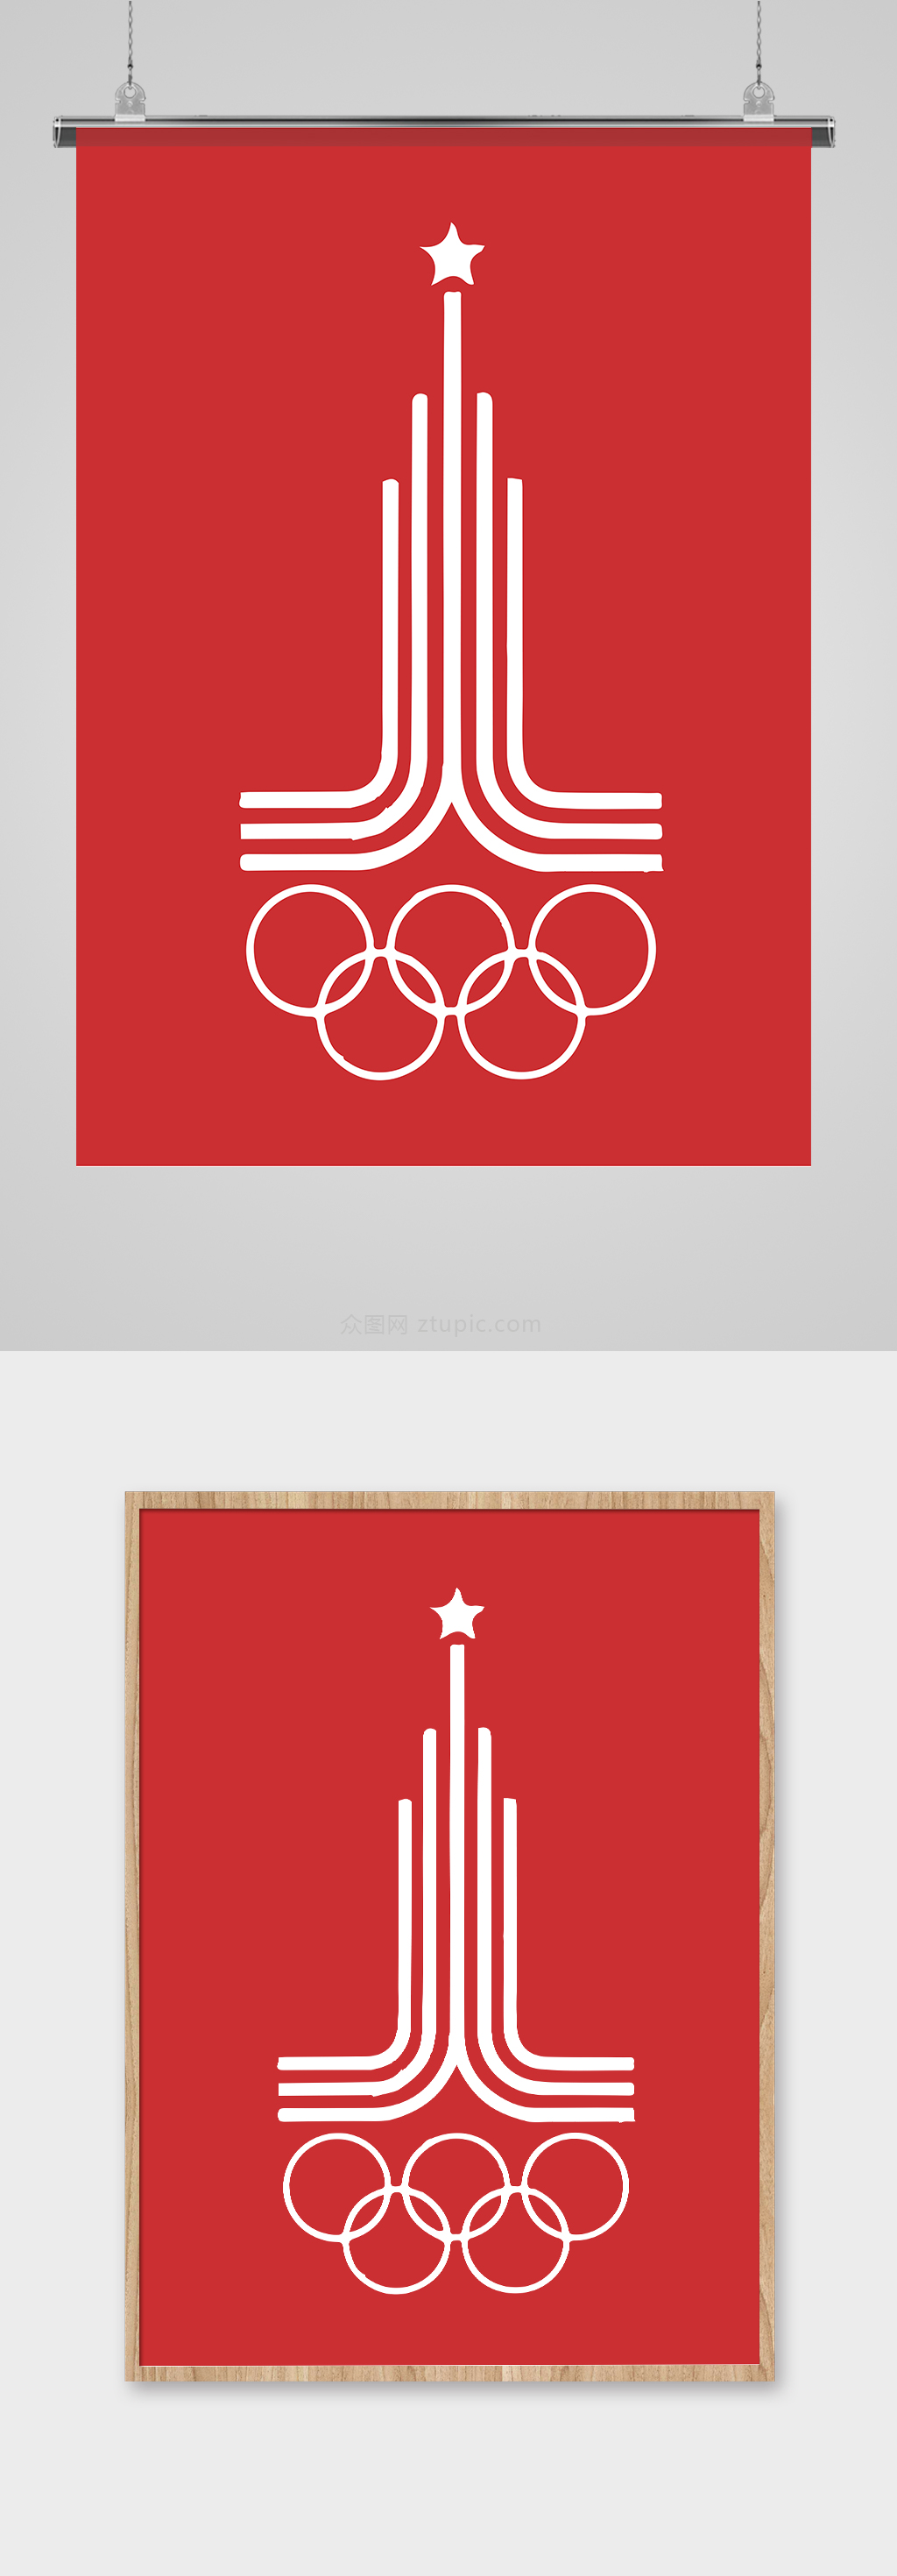 奥运图案设计图片